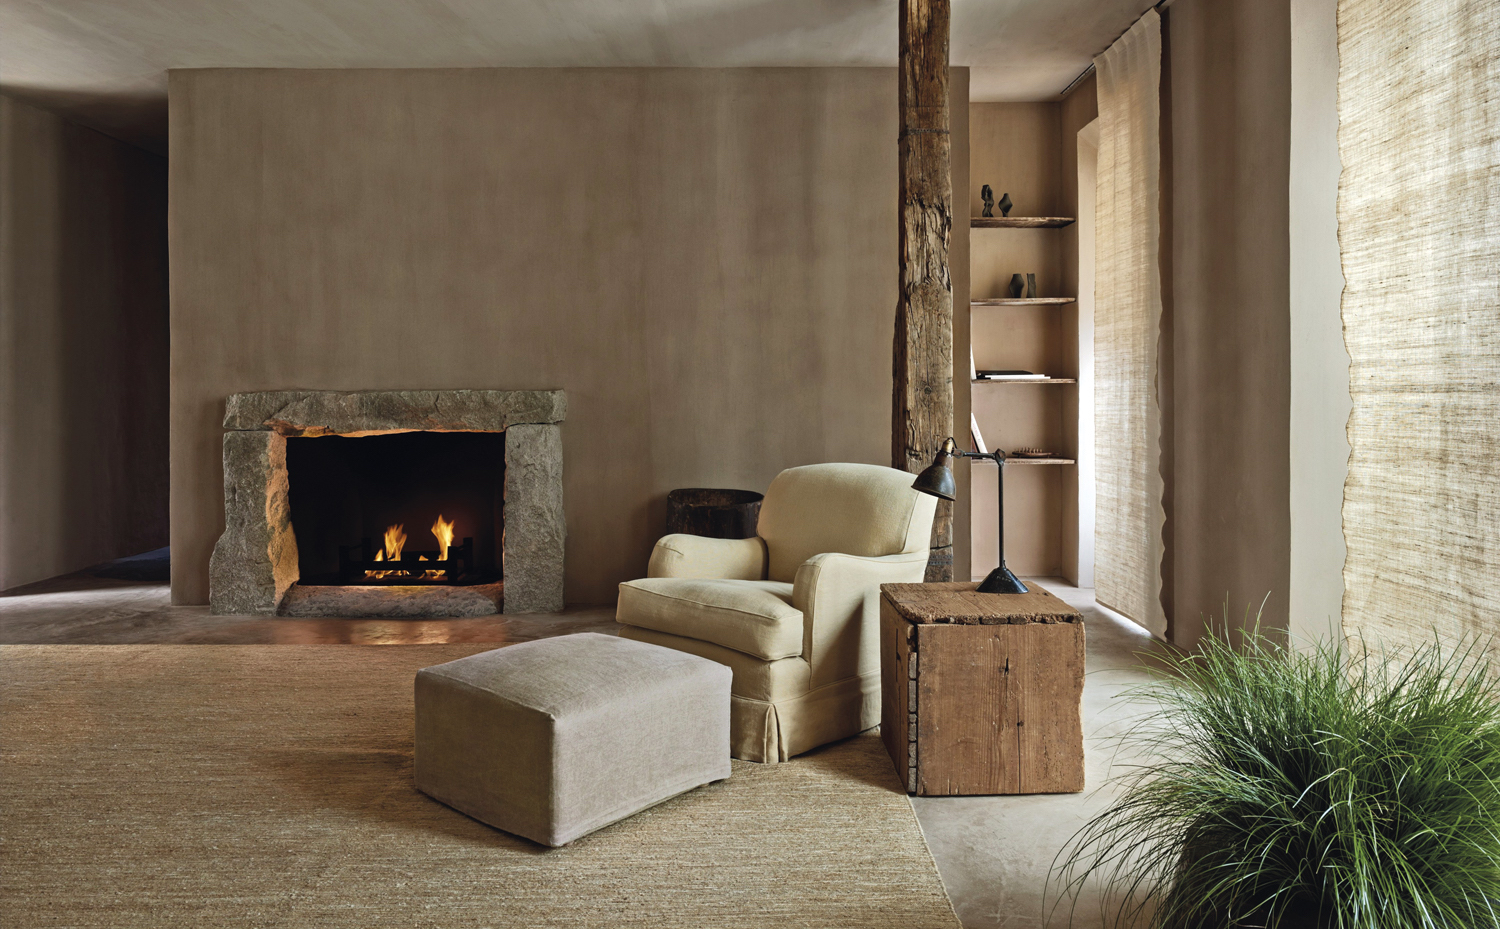 TribecaPenthouse2. Para el diseñador belga Axel Vervoordt, el minimalismo significa extraer el máximo resultado con mínimos recursos